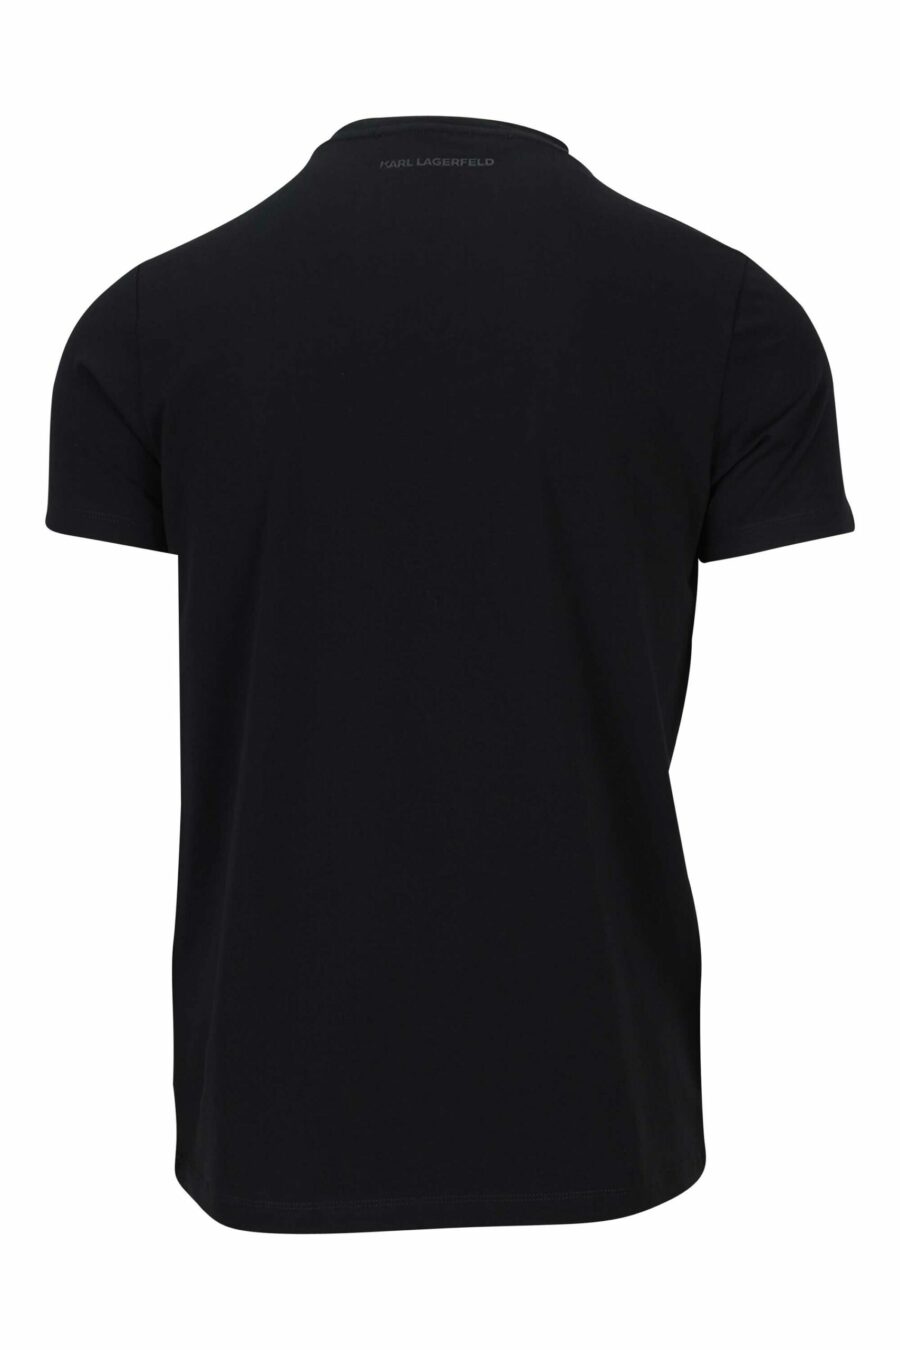 T-shirt preta com logótipo branco centrado - 4062226676205 1 1 à escala